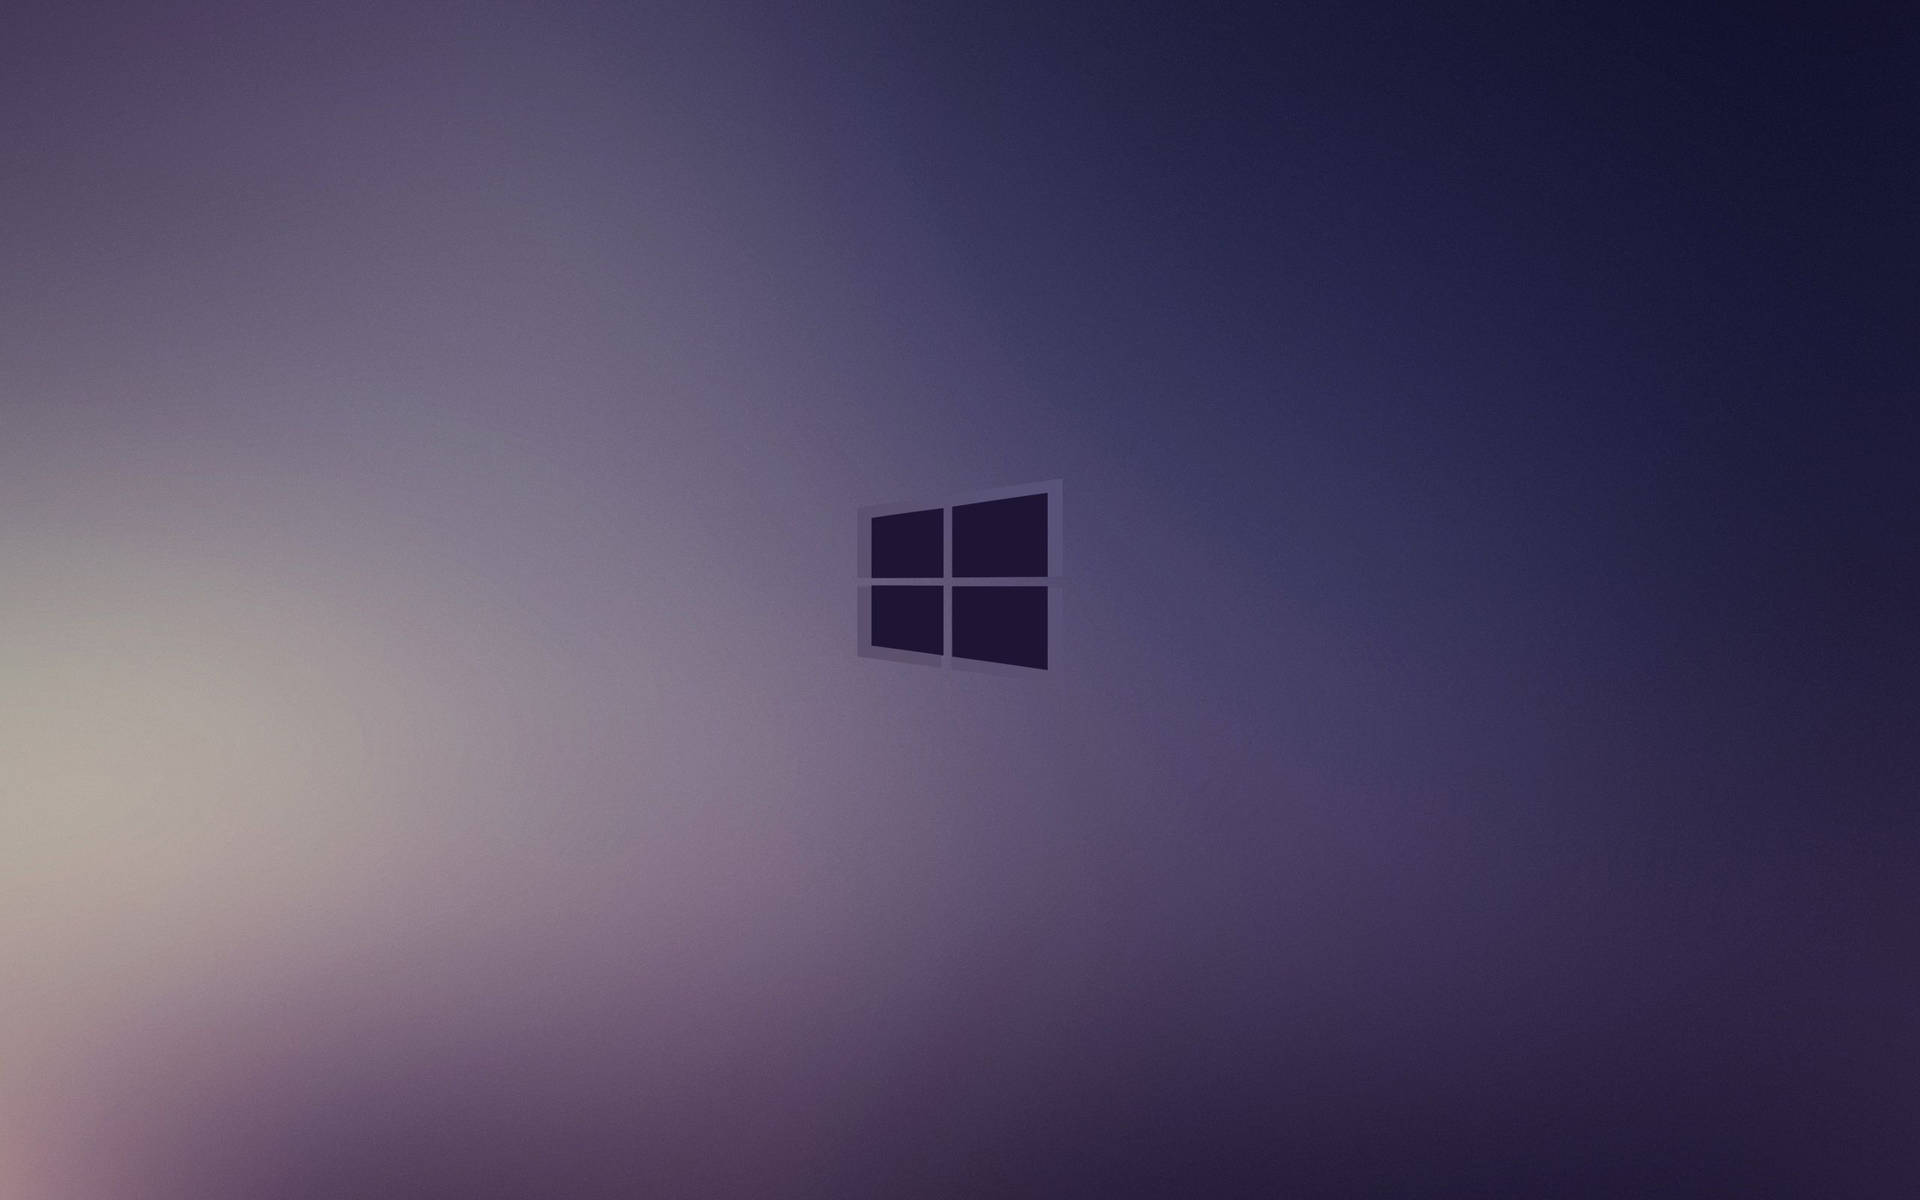 Windows 10 Hd Dark Purple Background